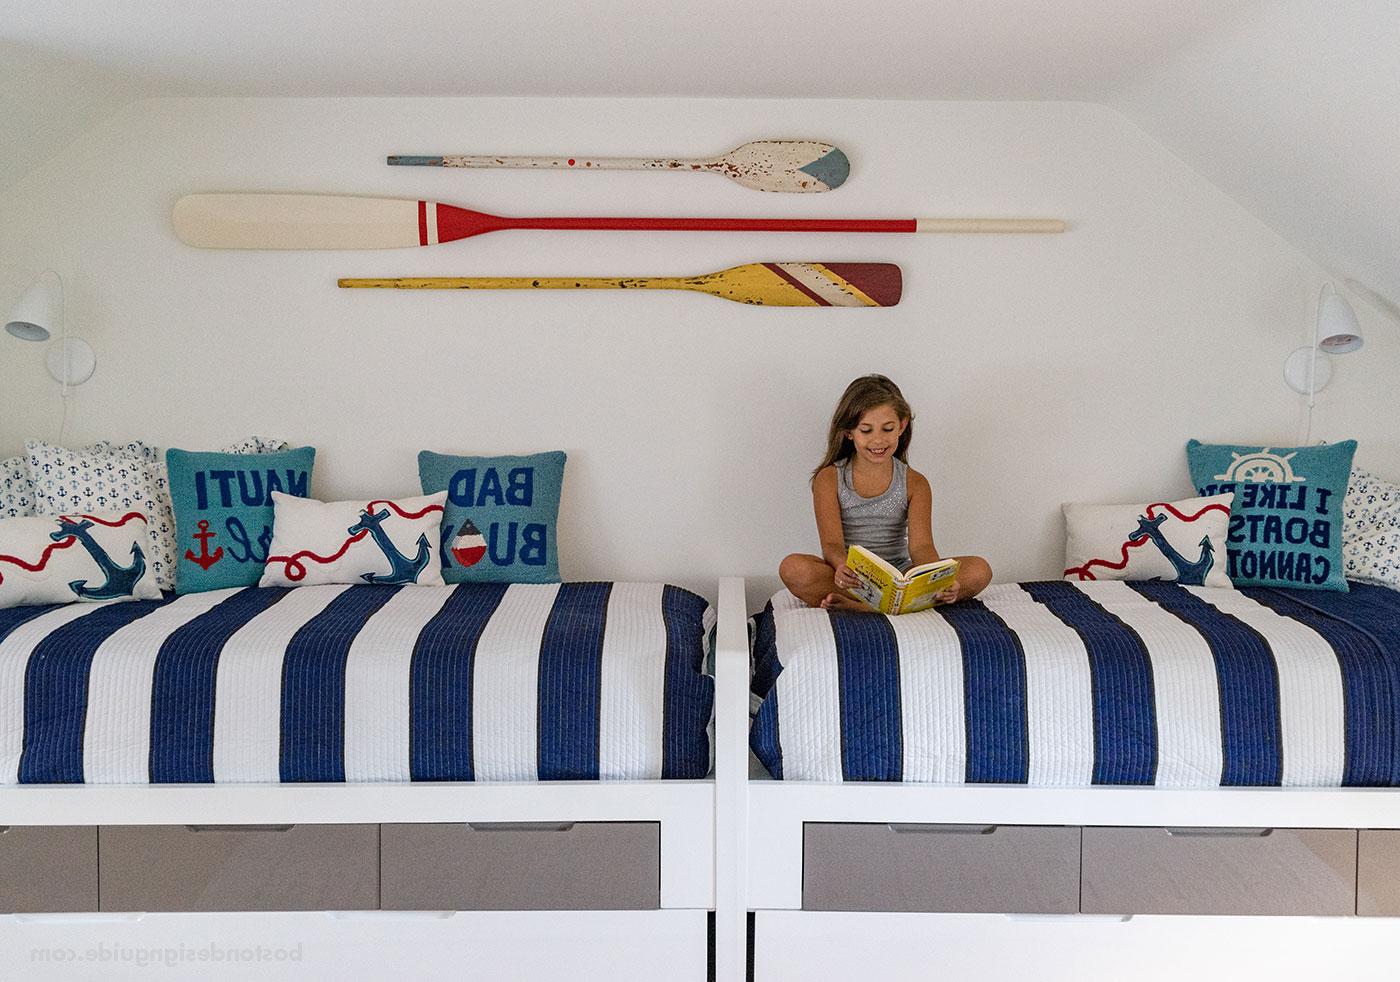 由玛莎葡萄园岛室内设计公司设计的航海蓝白儿童房, 由Hutker建筑师设计的建筑